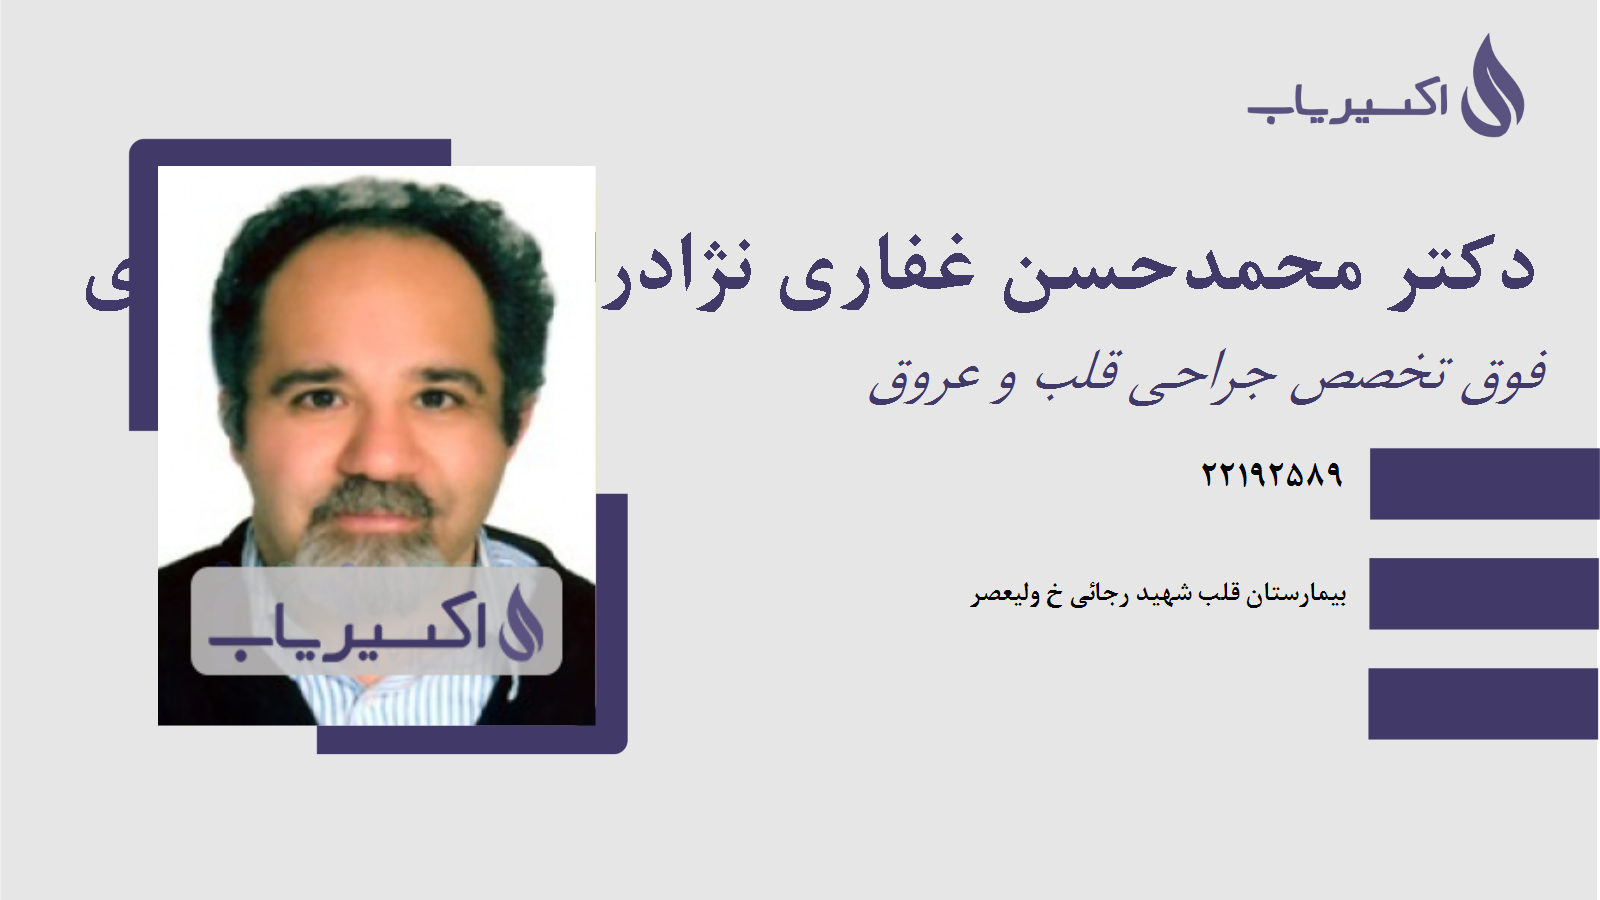 مطب دکتر محمدحسن غفاری نژادرائی دین محمدی